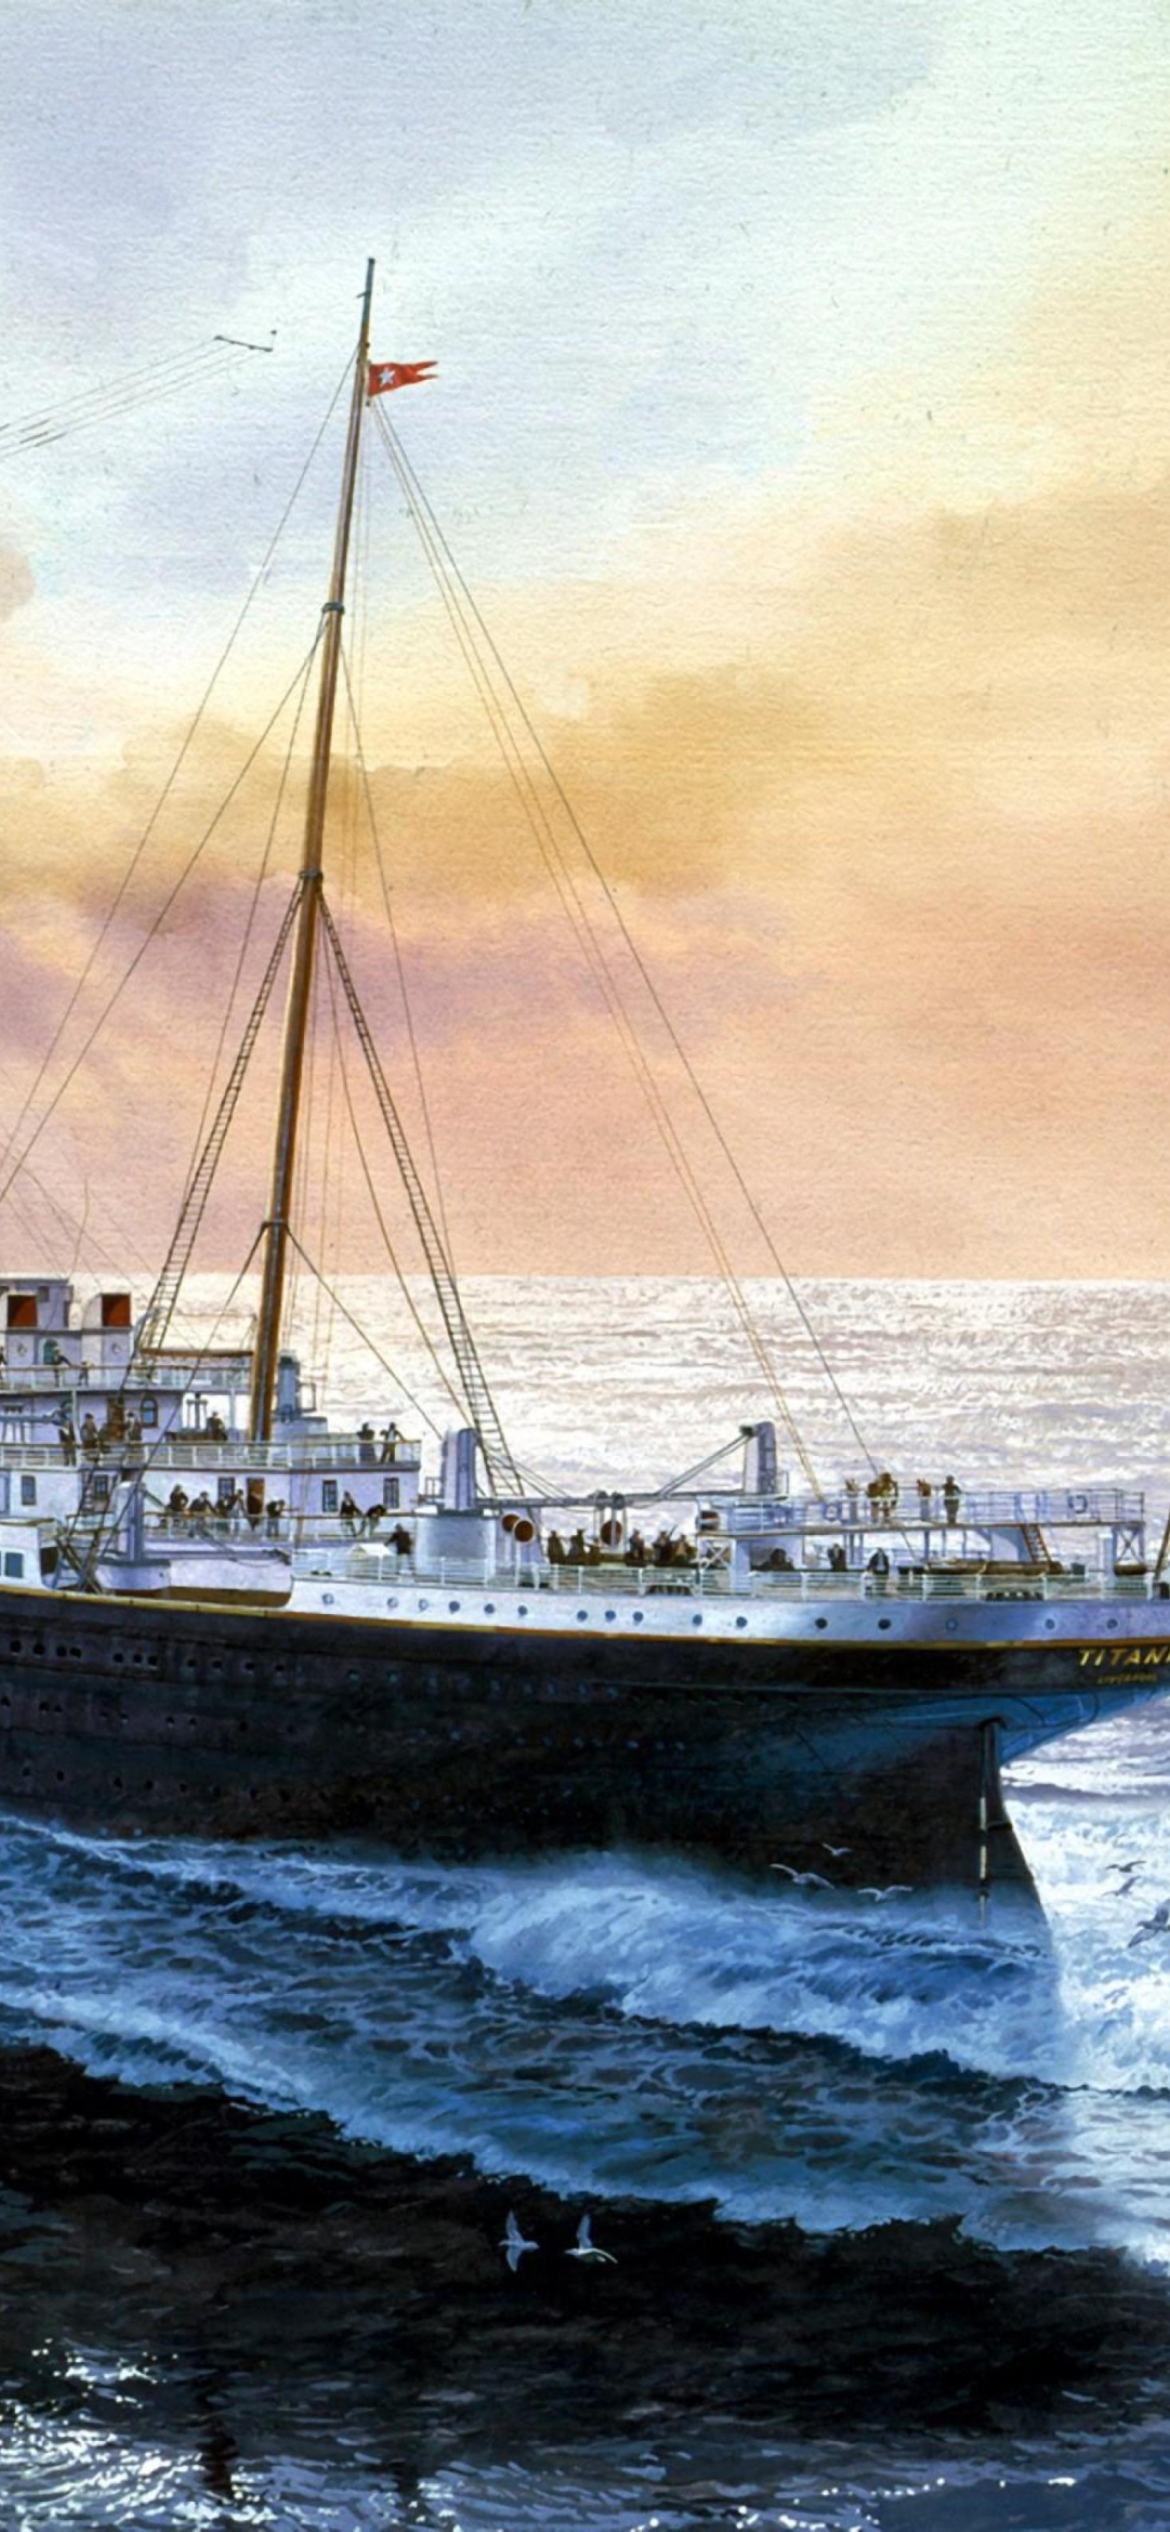 74+] Rms Titanic Wallpaper - WallpaperSafari